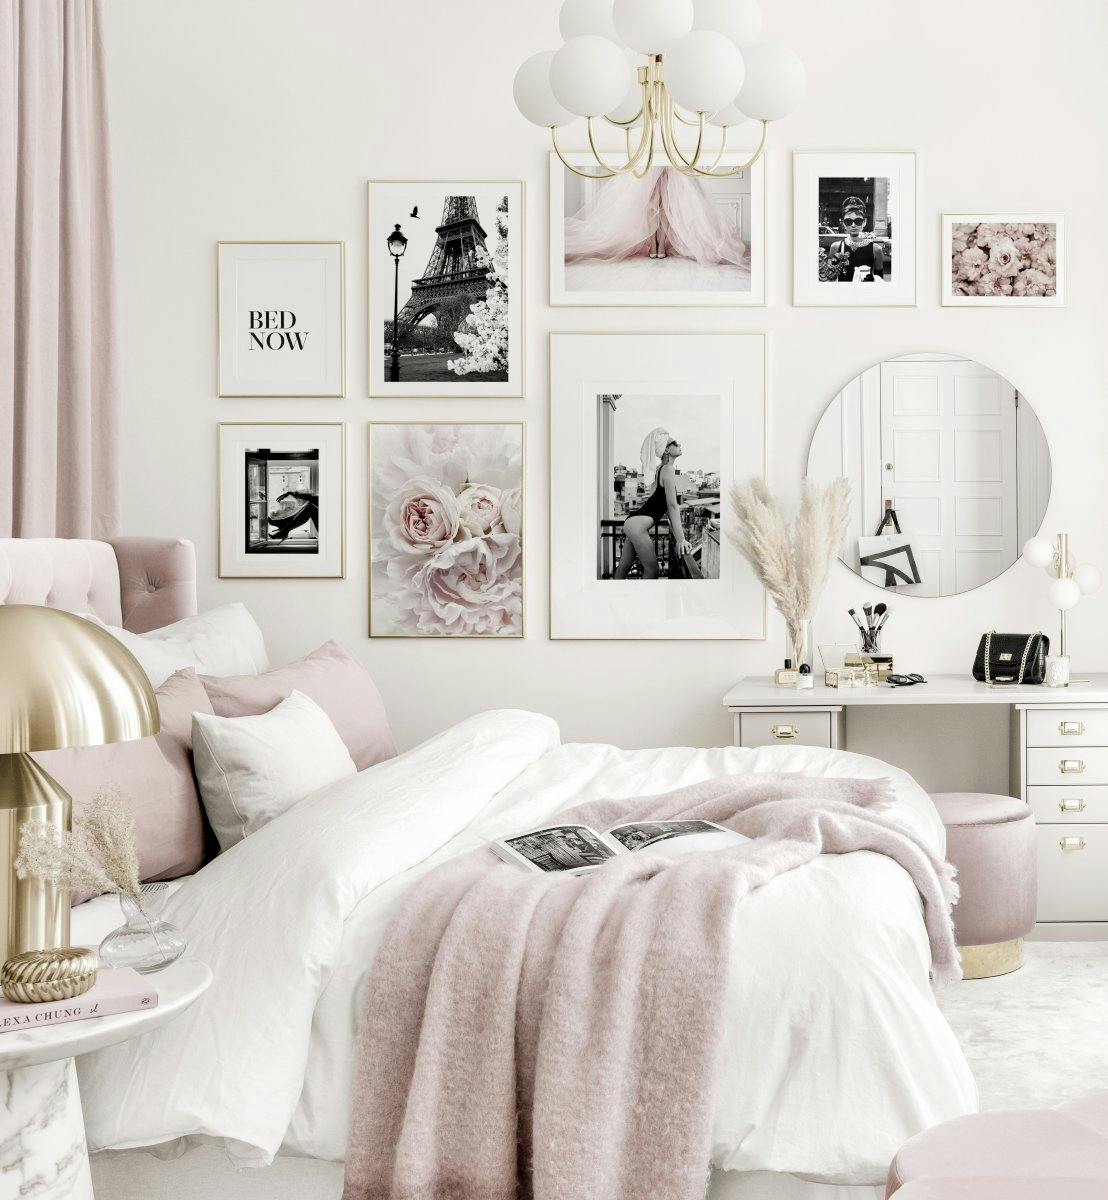 Elegancka galeria obrazow rozowo biala sypialnia czarno-biale plakaty zlote ramki